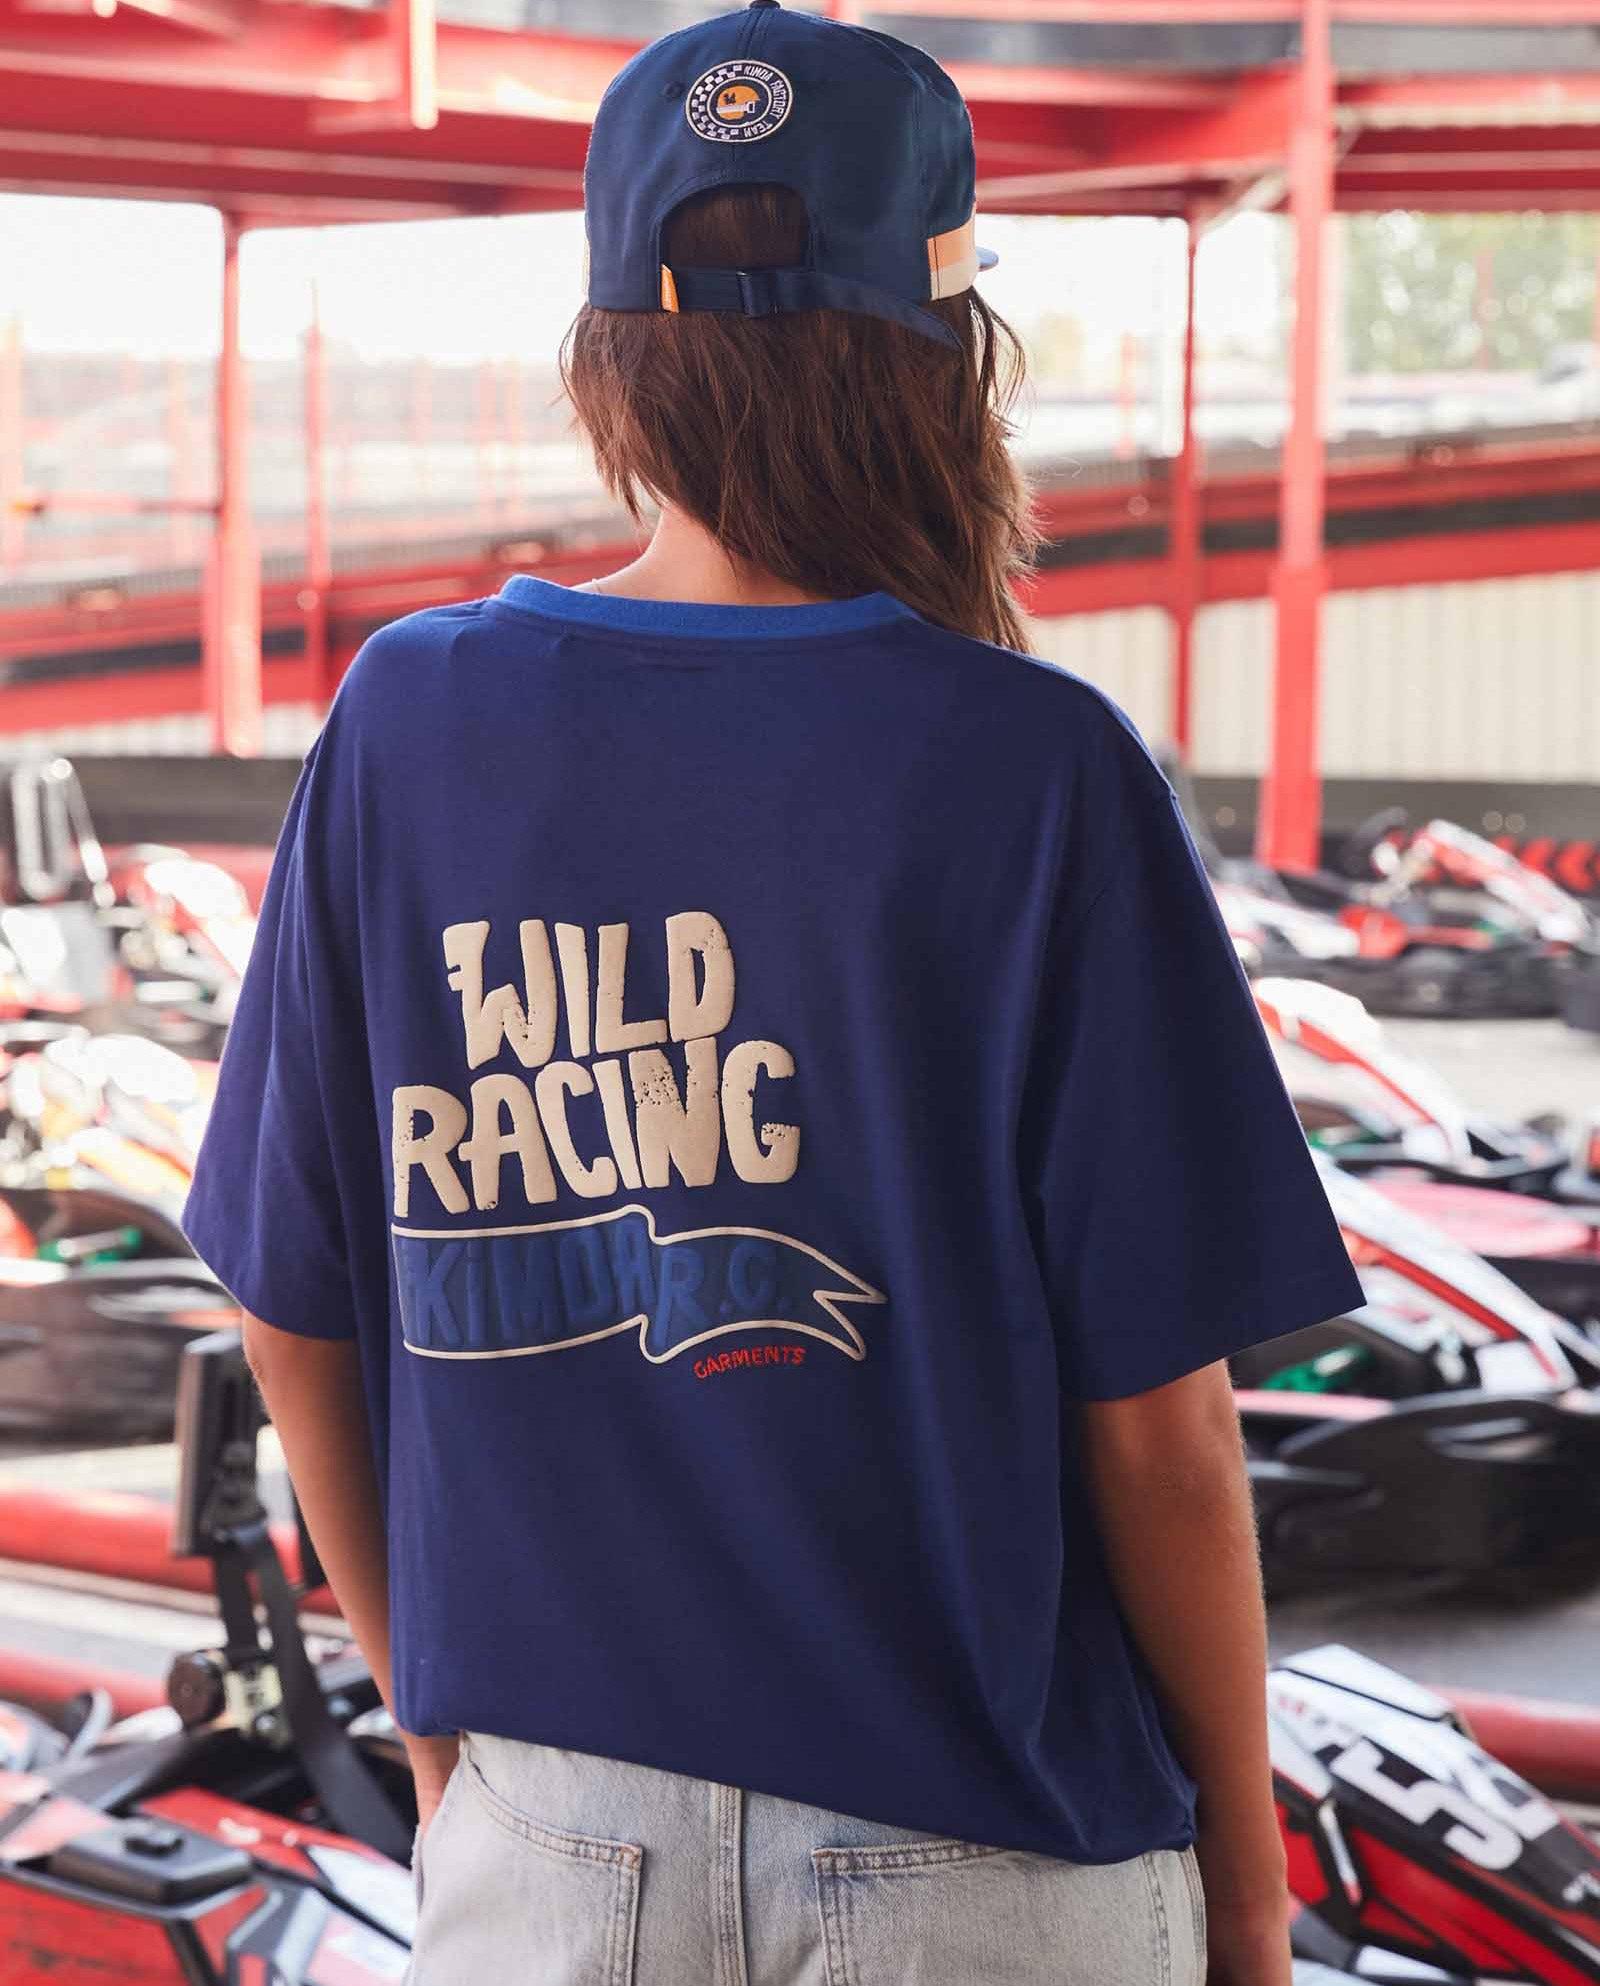 Wild Racing